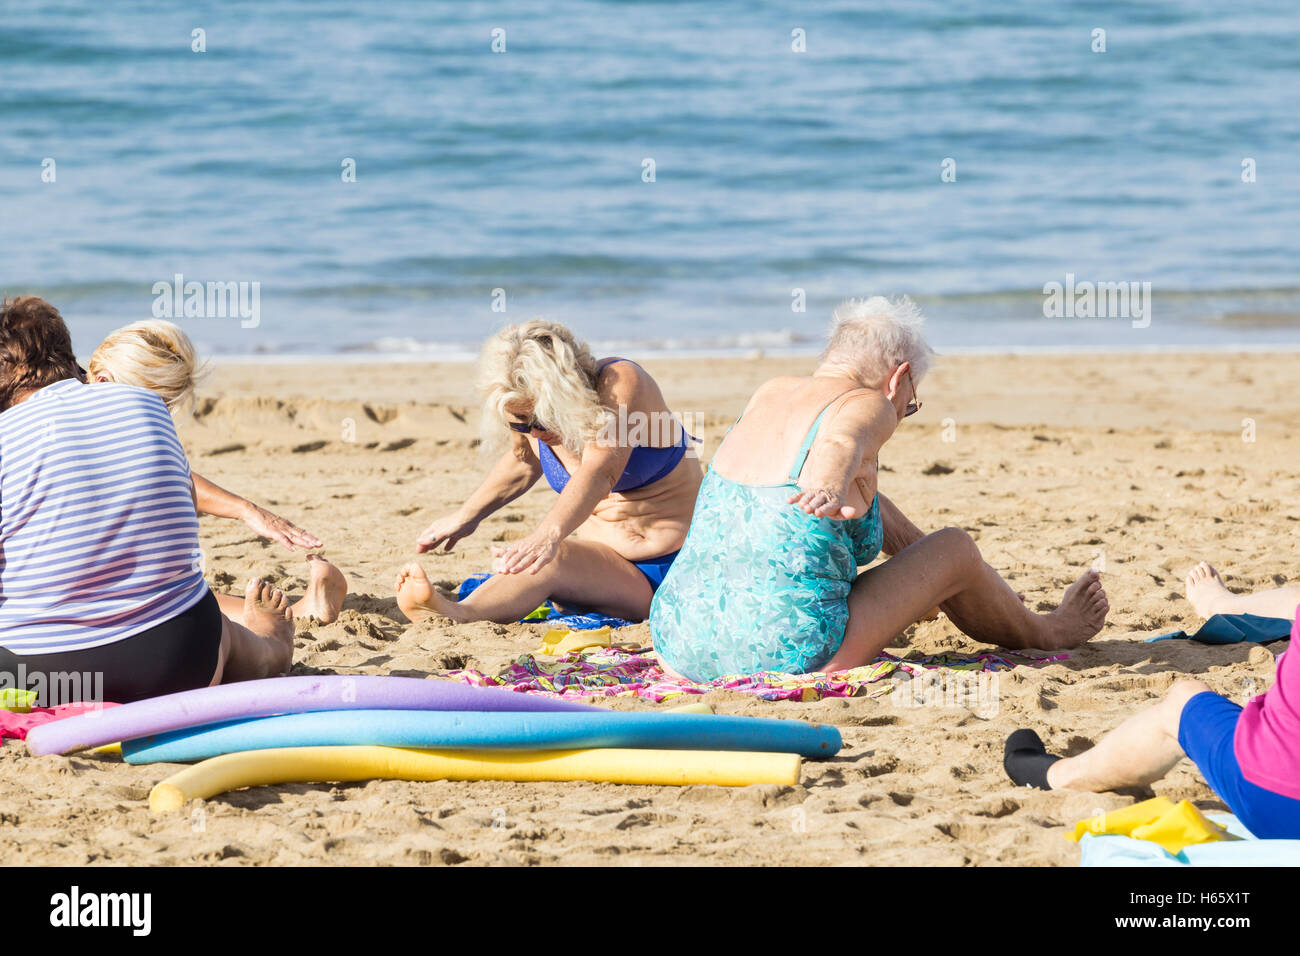 Garder la forme tous les jours retraités classe sur la plage de Las Canteras à Las Palmas, Gran Canaria, Îles Canaries, Espagne Banque D'Images